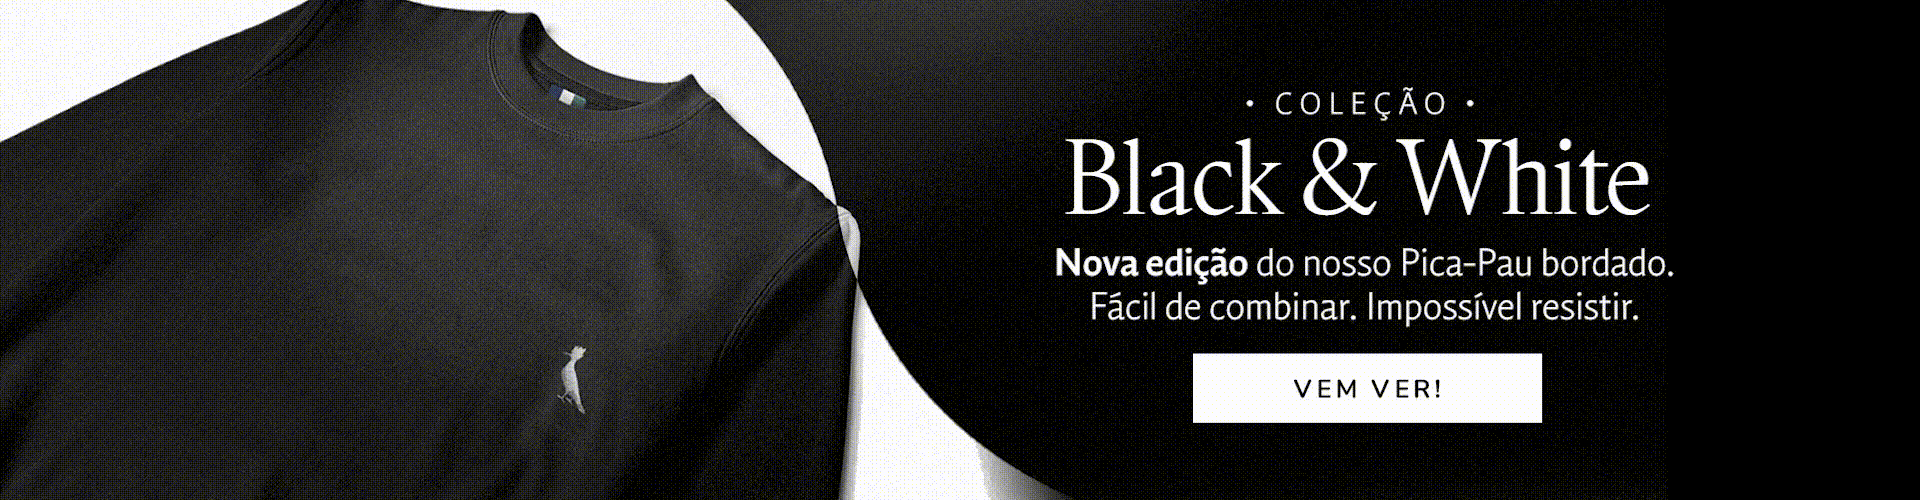 Coleção Black & White